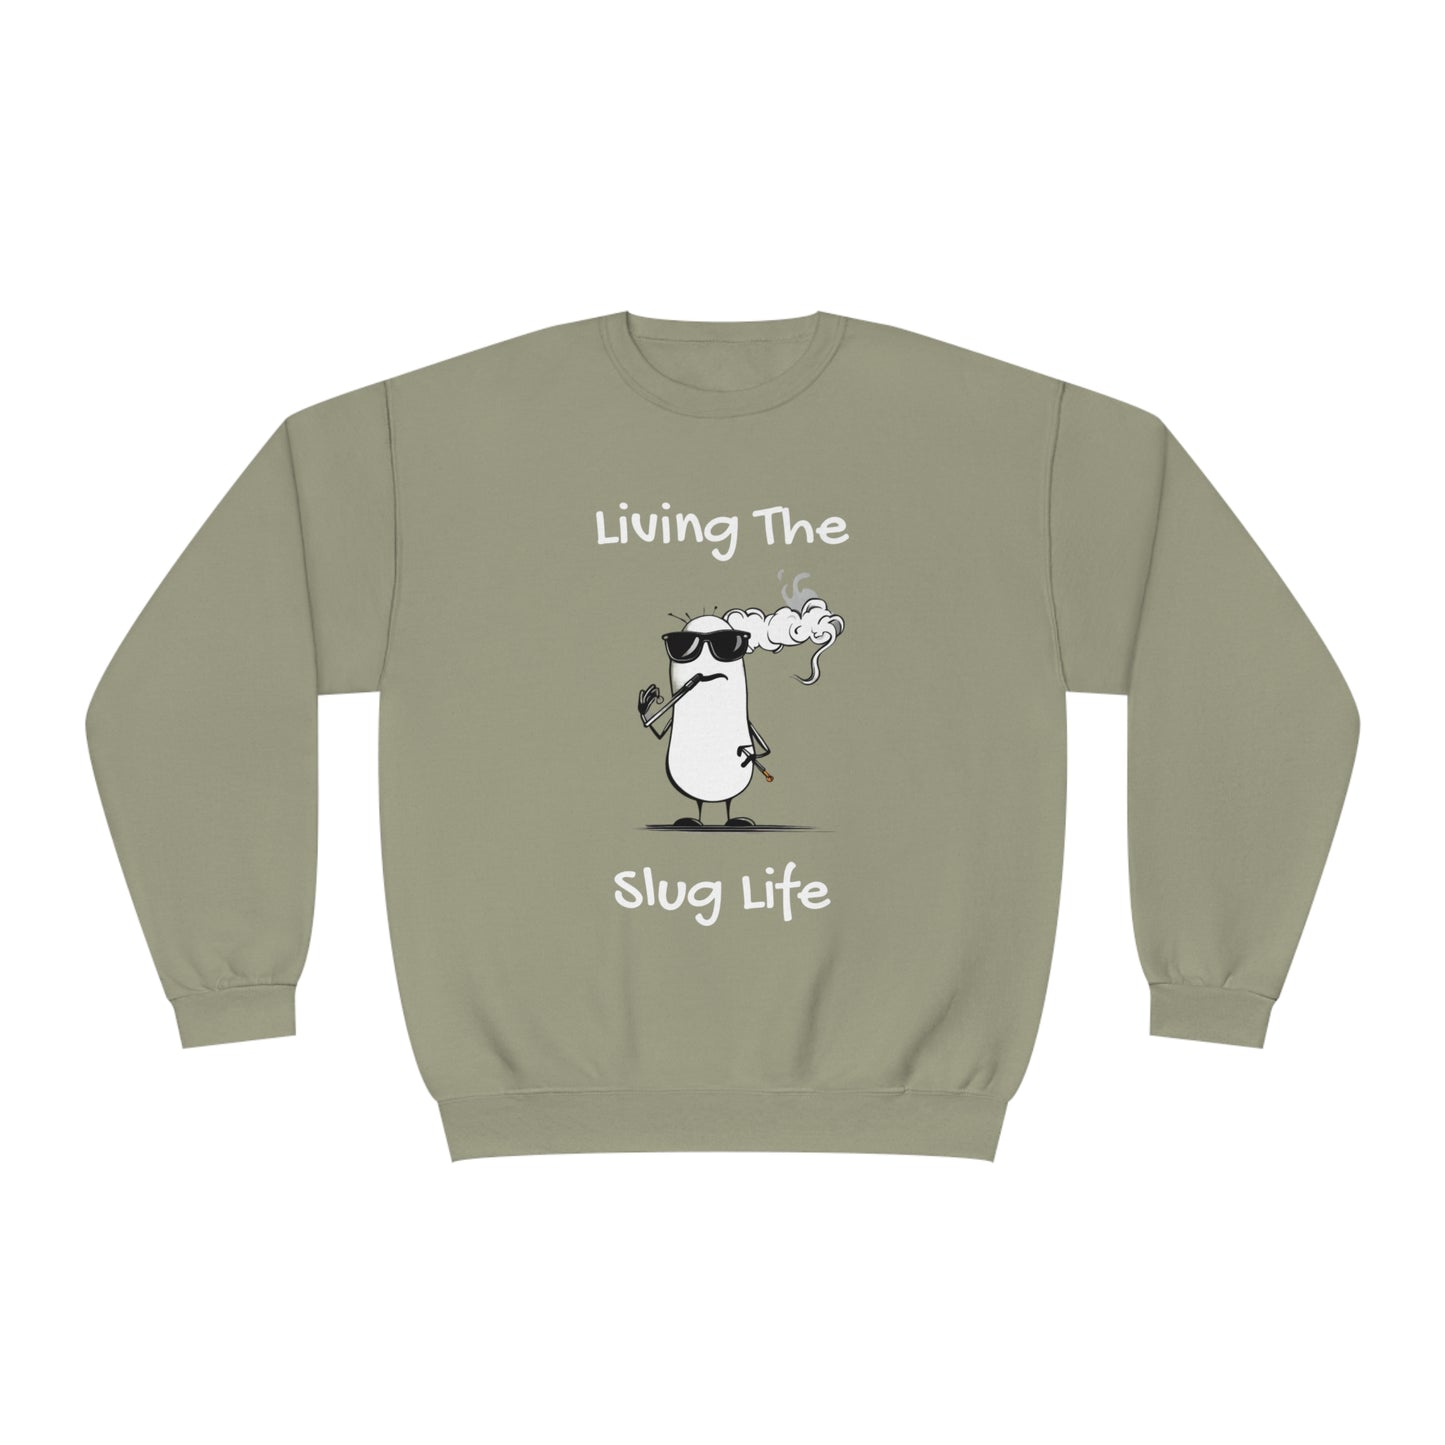 Living The Slug Life. Unisex NuBlend® Crewneck Sweatshirt